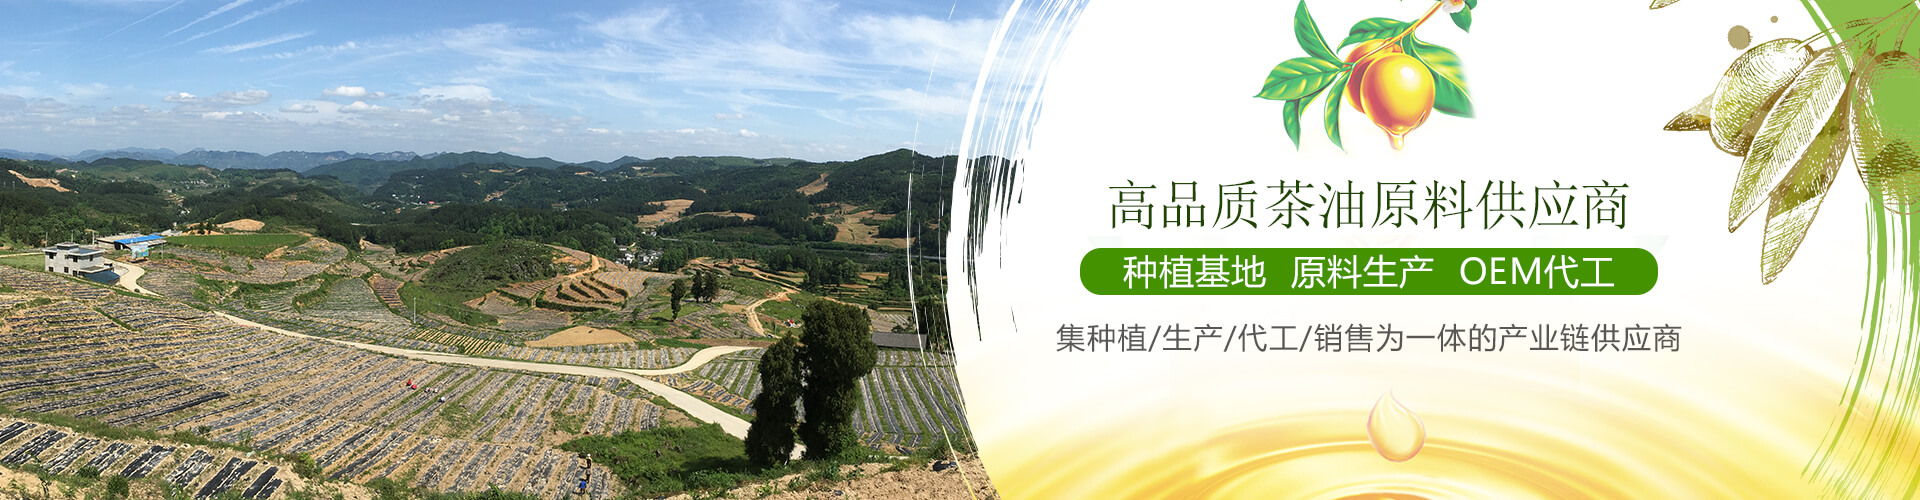 贵州一航生态农牧科技开发有限公司